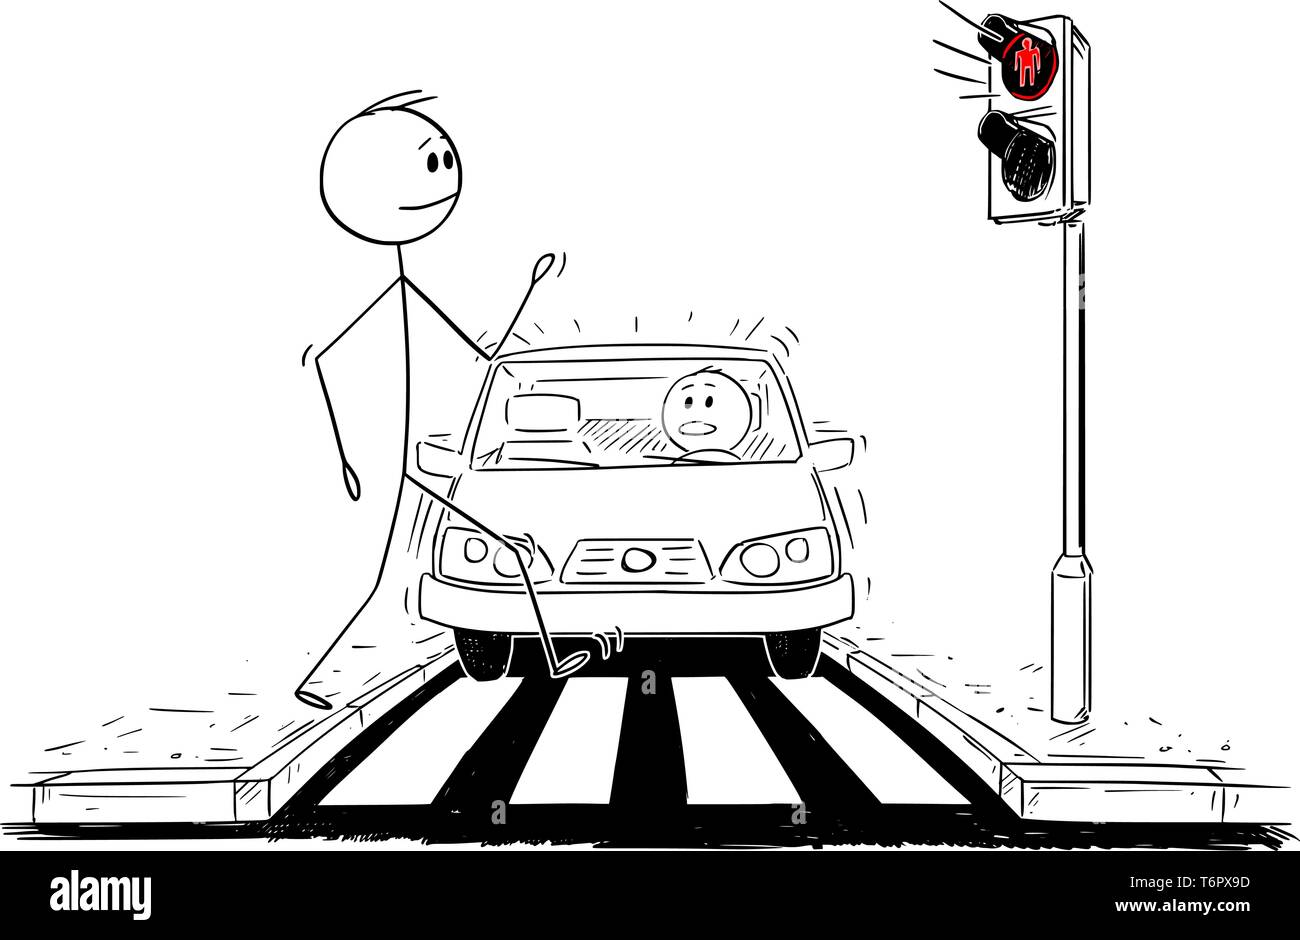 Cartoon stick figure dessin illustration conceptuelle de l'homme marche sur concordance ou passage piétons ignorant que le voyant rouge est allumé sur feux de voiture et se rapproche. Illustration de Vecteur